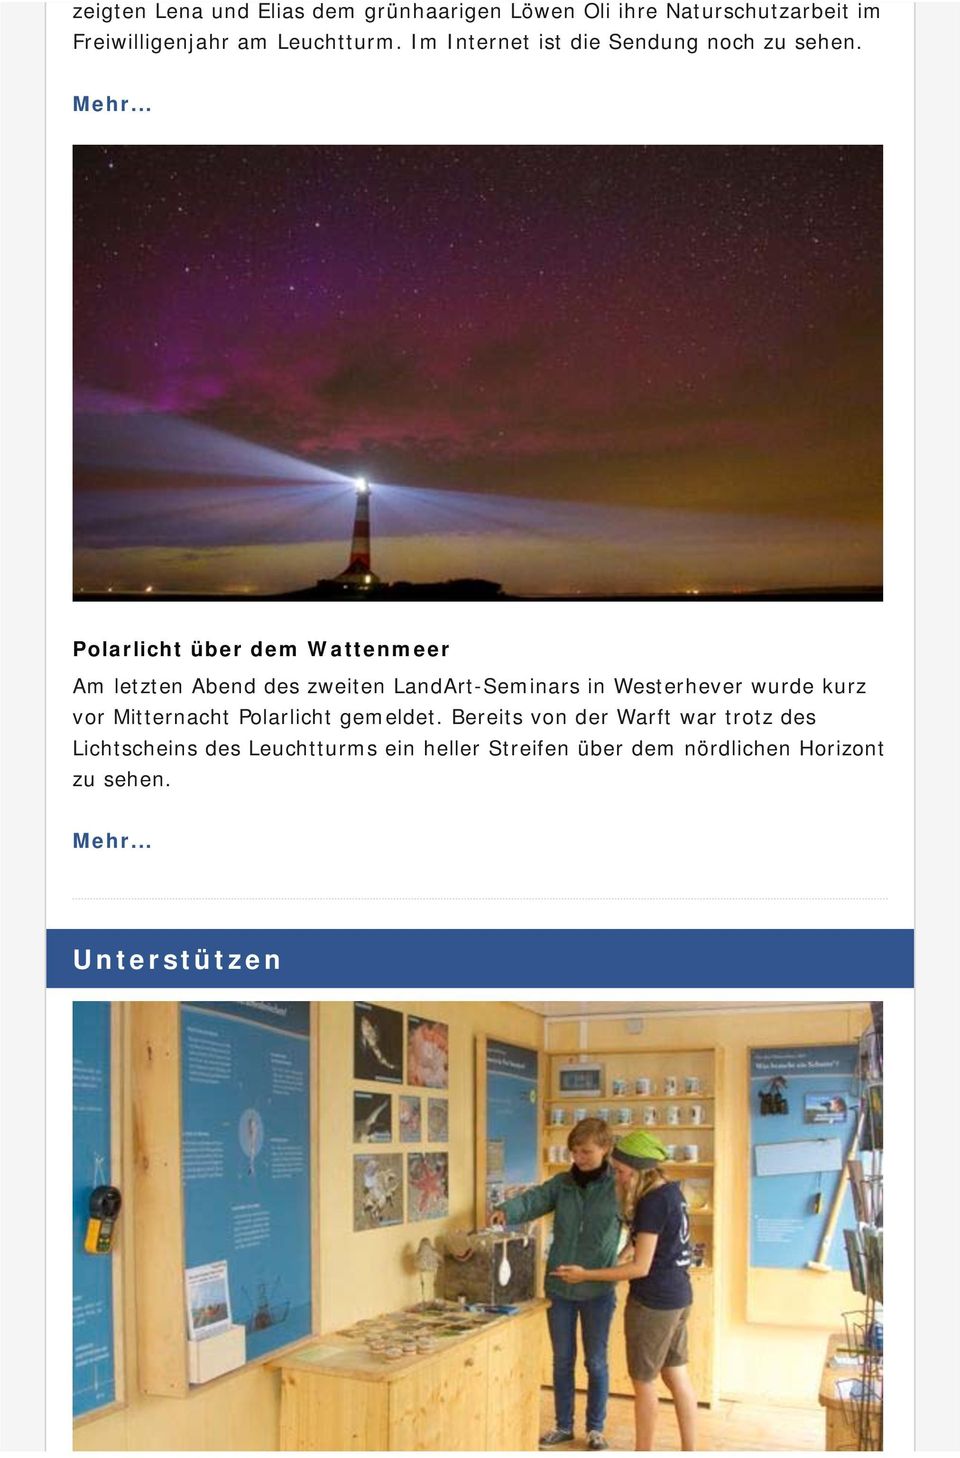 Polarlicht über dem Wattenmeer Am letzten Abend des zweiten LandArt-Seminars in Westerhever wurde kurz vor